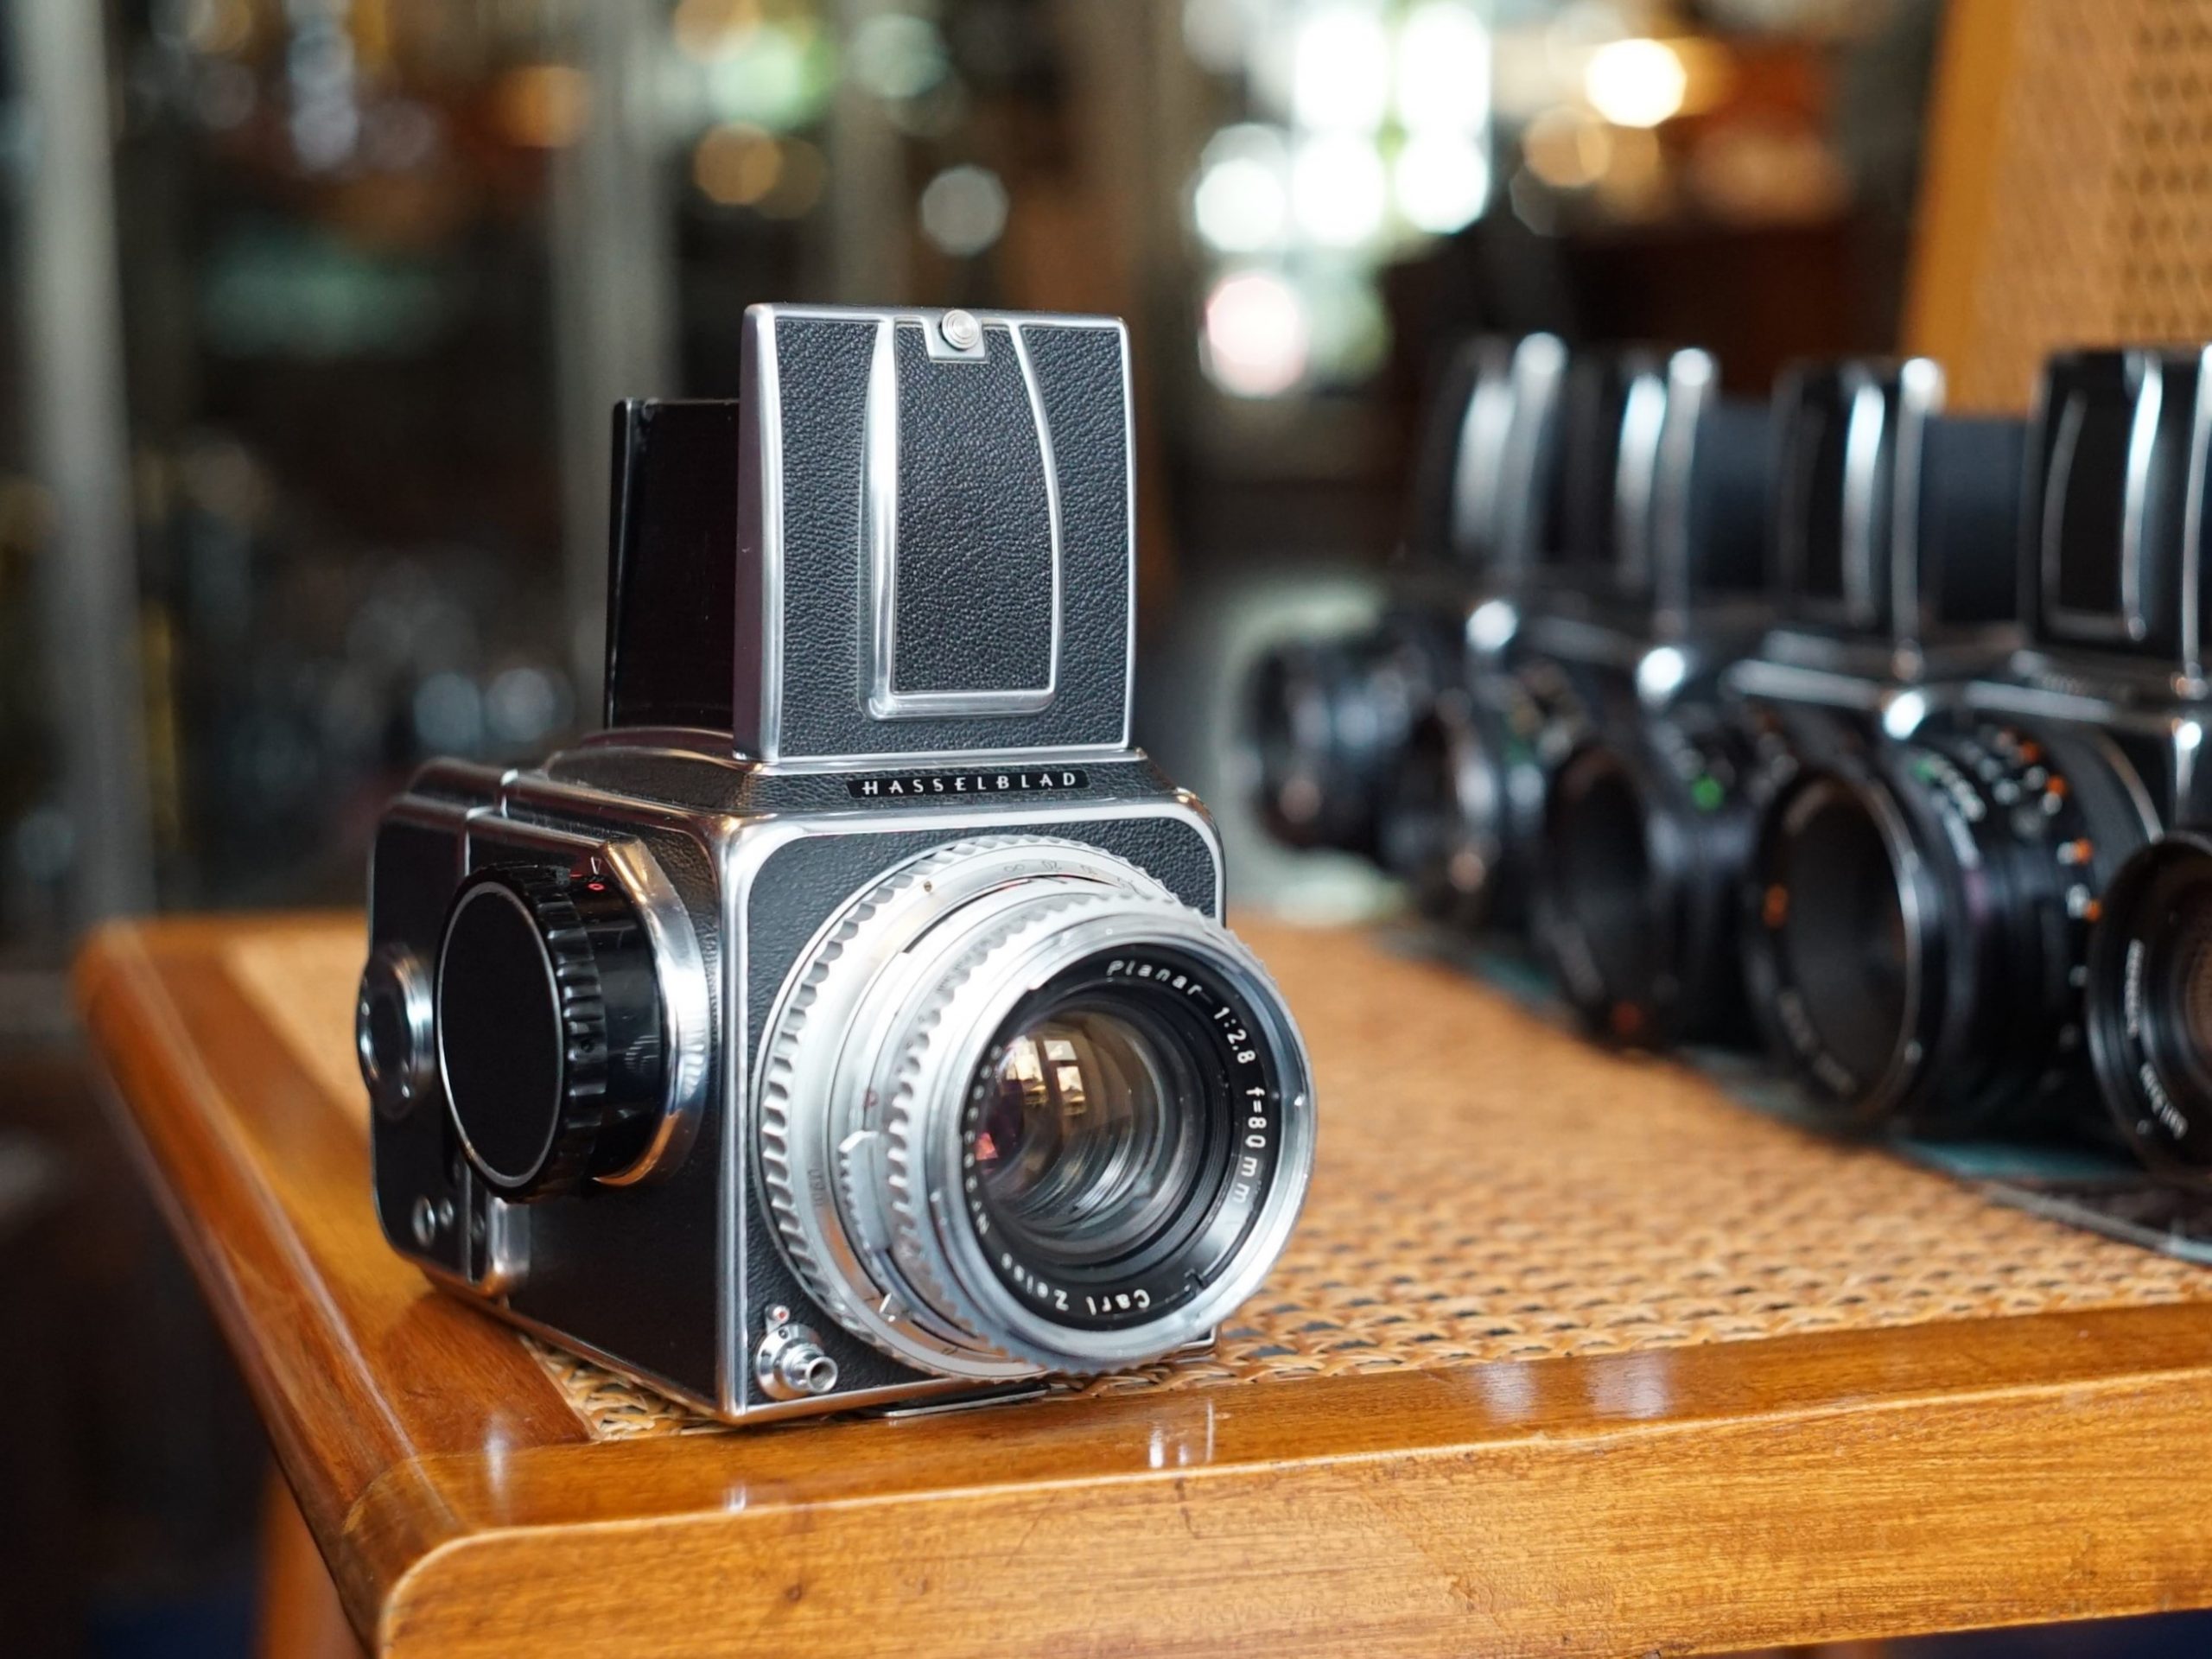 Hasselblad camera's kopen we graag in. Fotohandel Delfshaven is ook altijd op zoek naar Analoog Leica M3, M2, M4, M6, Mamiya RZ67, M645, Nikon F, F2, FM3a, FM2, Olympus OM, We horen het graag indien u iets bijzonders in de aanbieding heeft